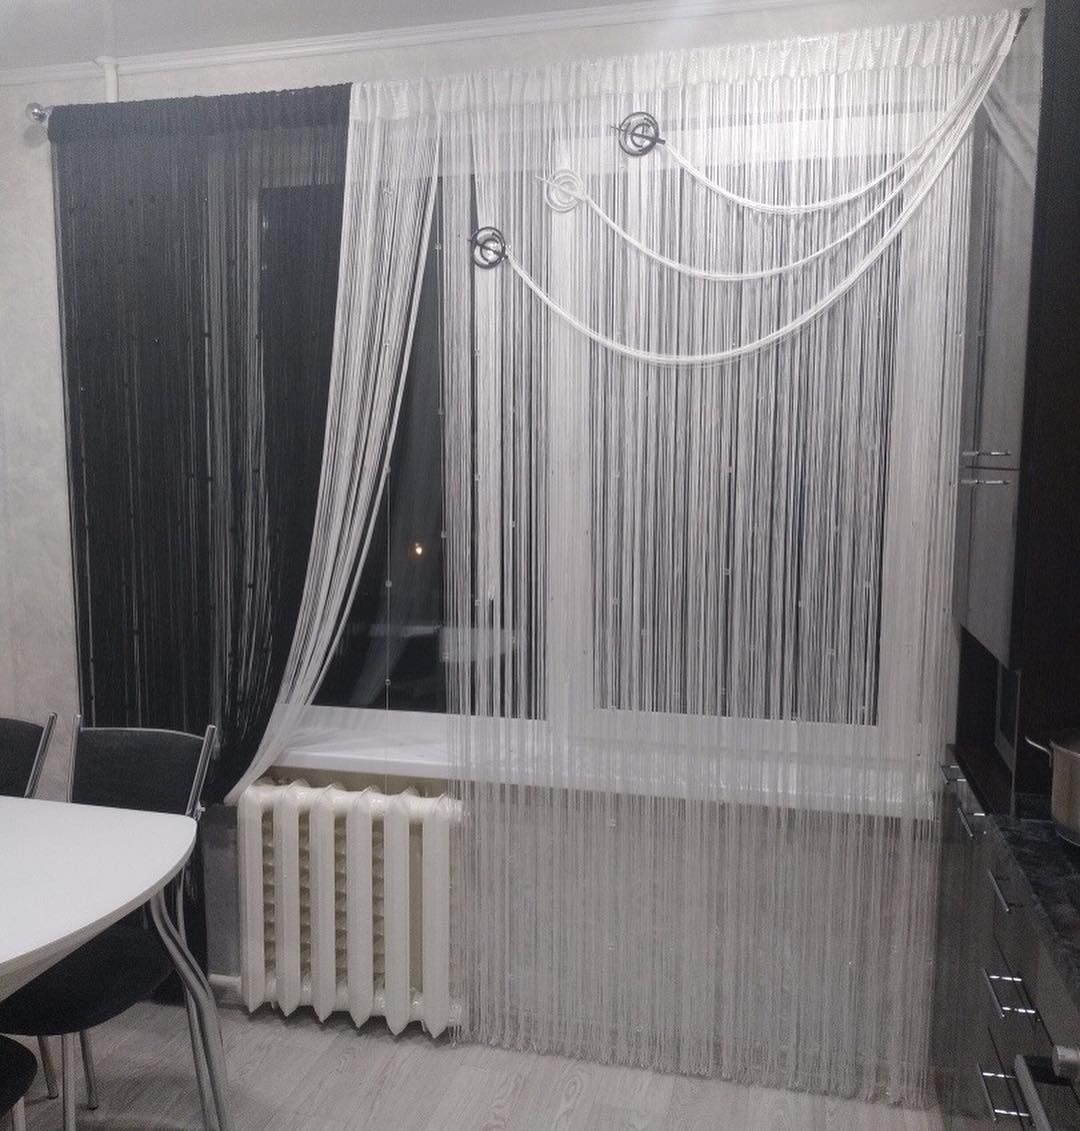 Нитяные шторы удобны и практичны для гостиной.